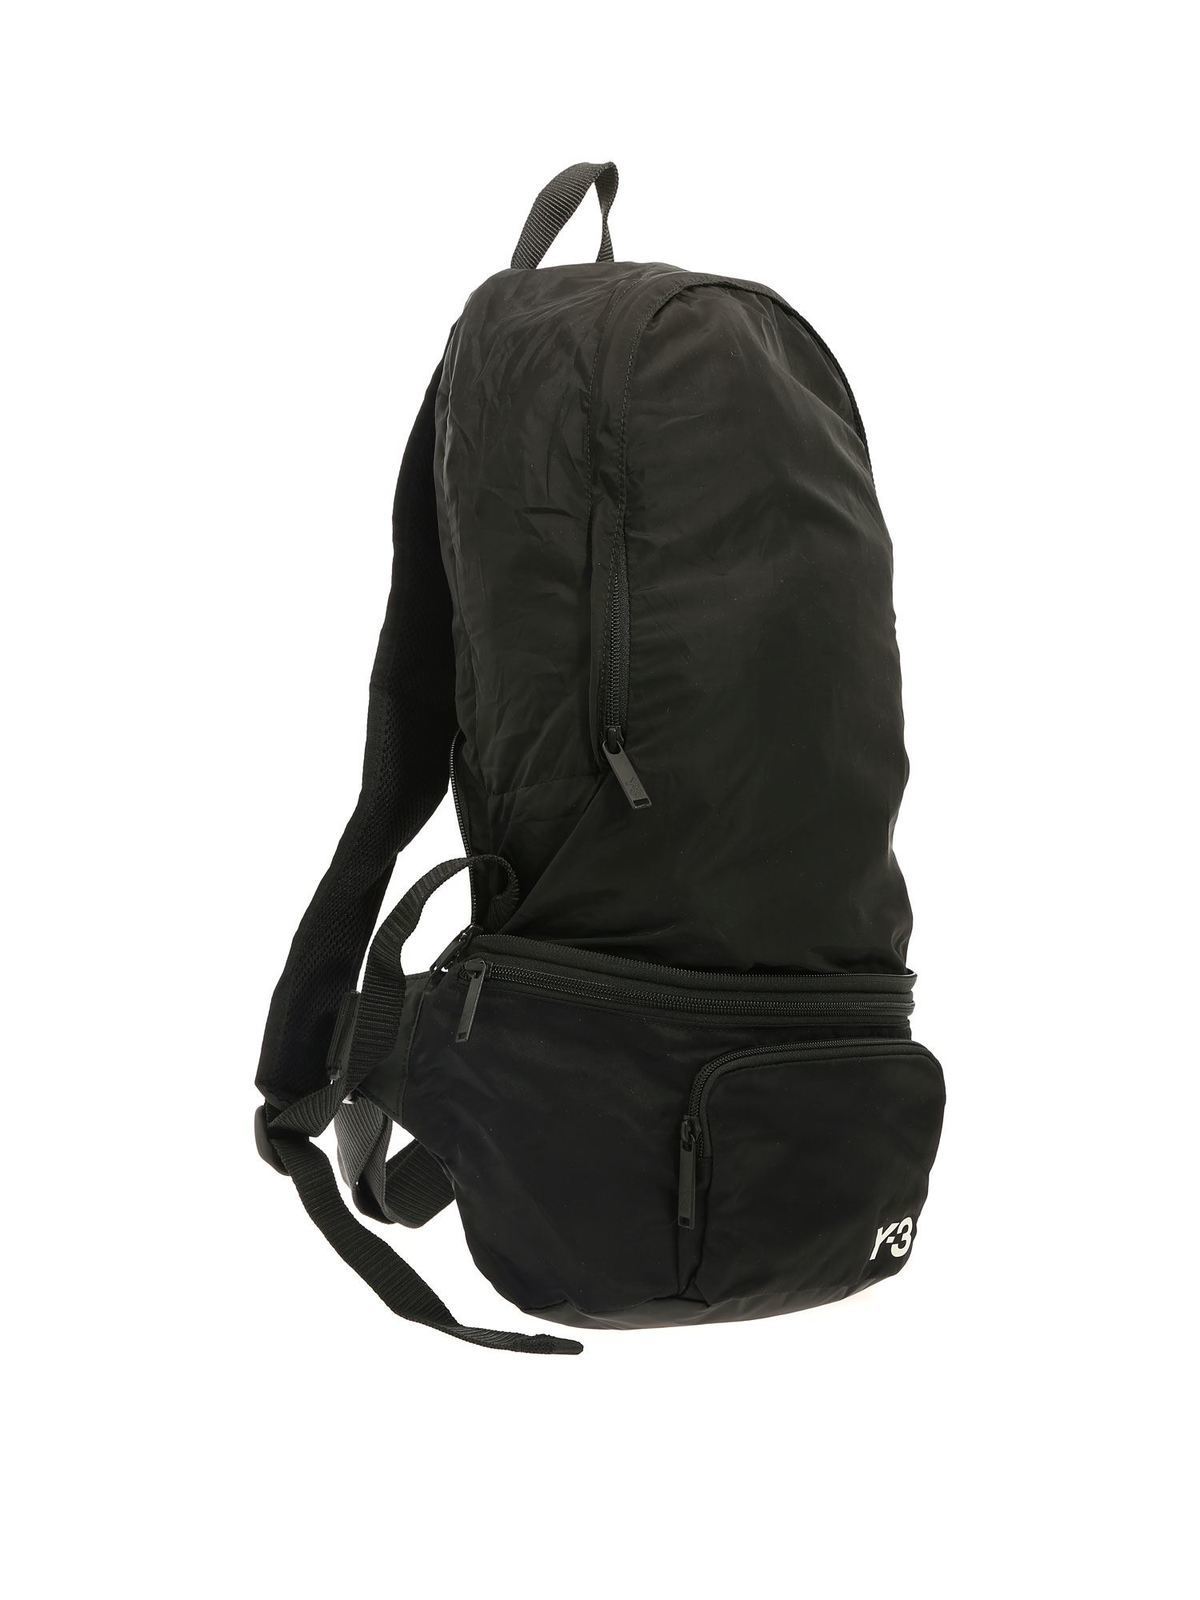 y3 backpacks